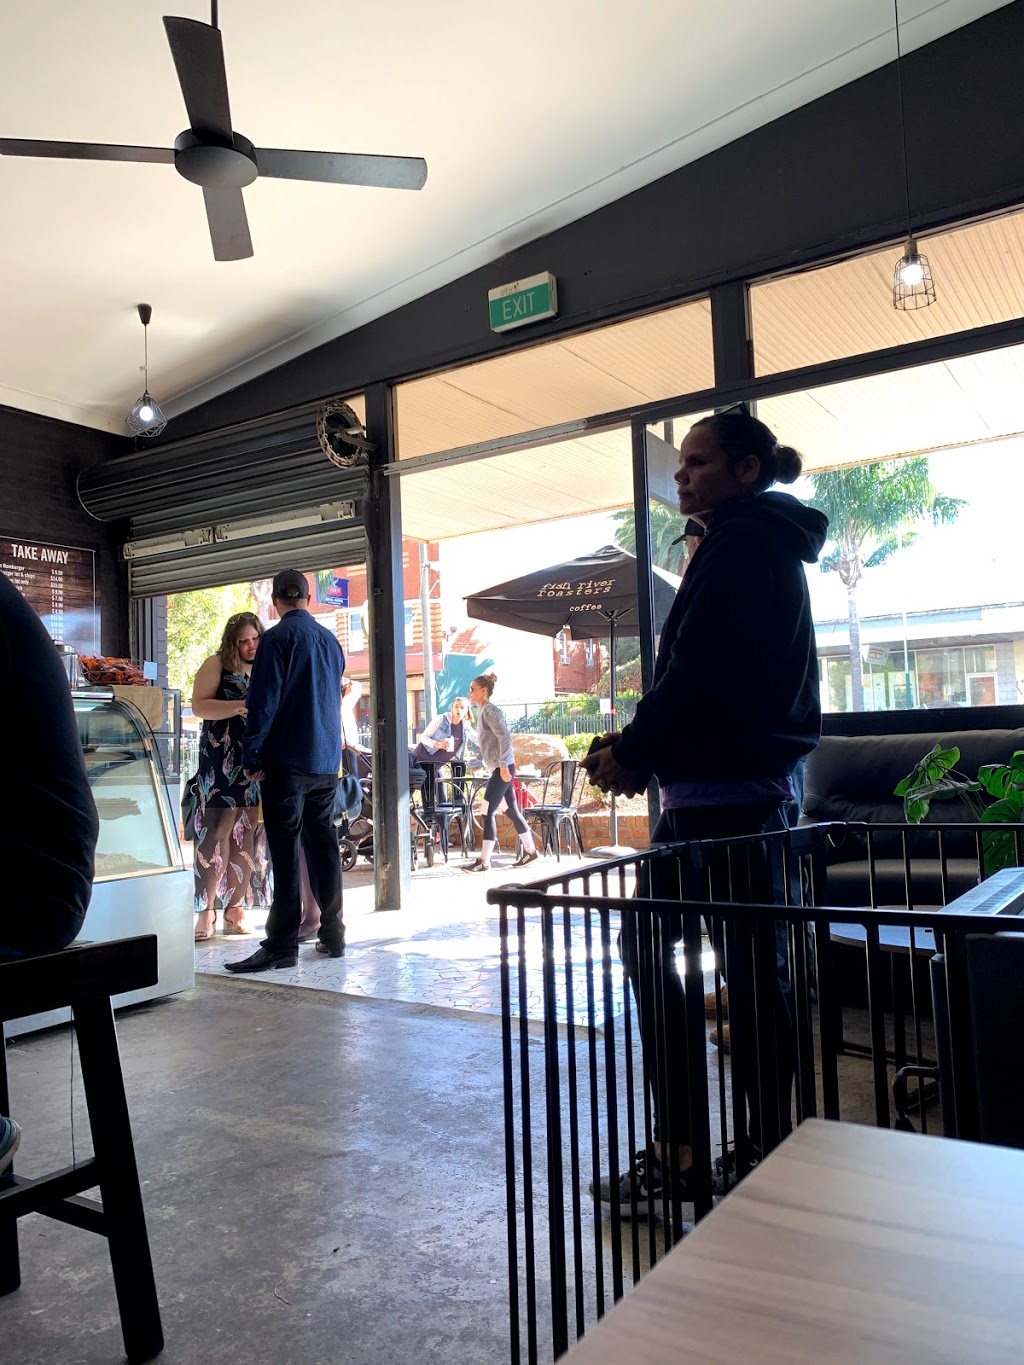 Café Romo | cafe | 80 Bathurst St, Condobolin NSW 2877, Australia | 0268954044 OR +61 2 6895 4044